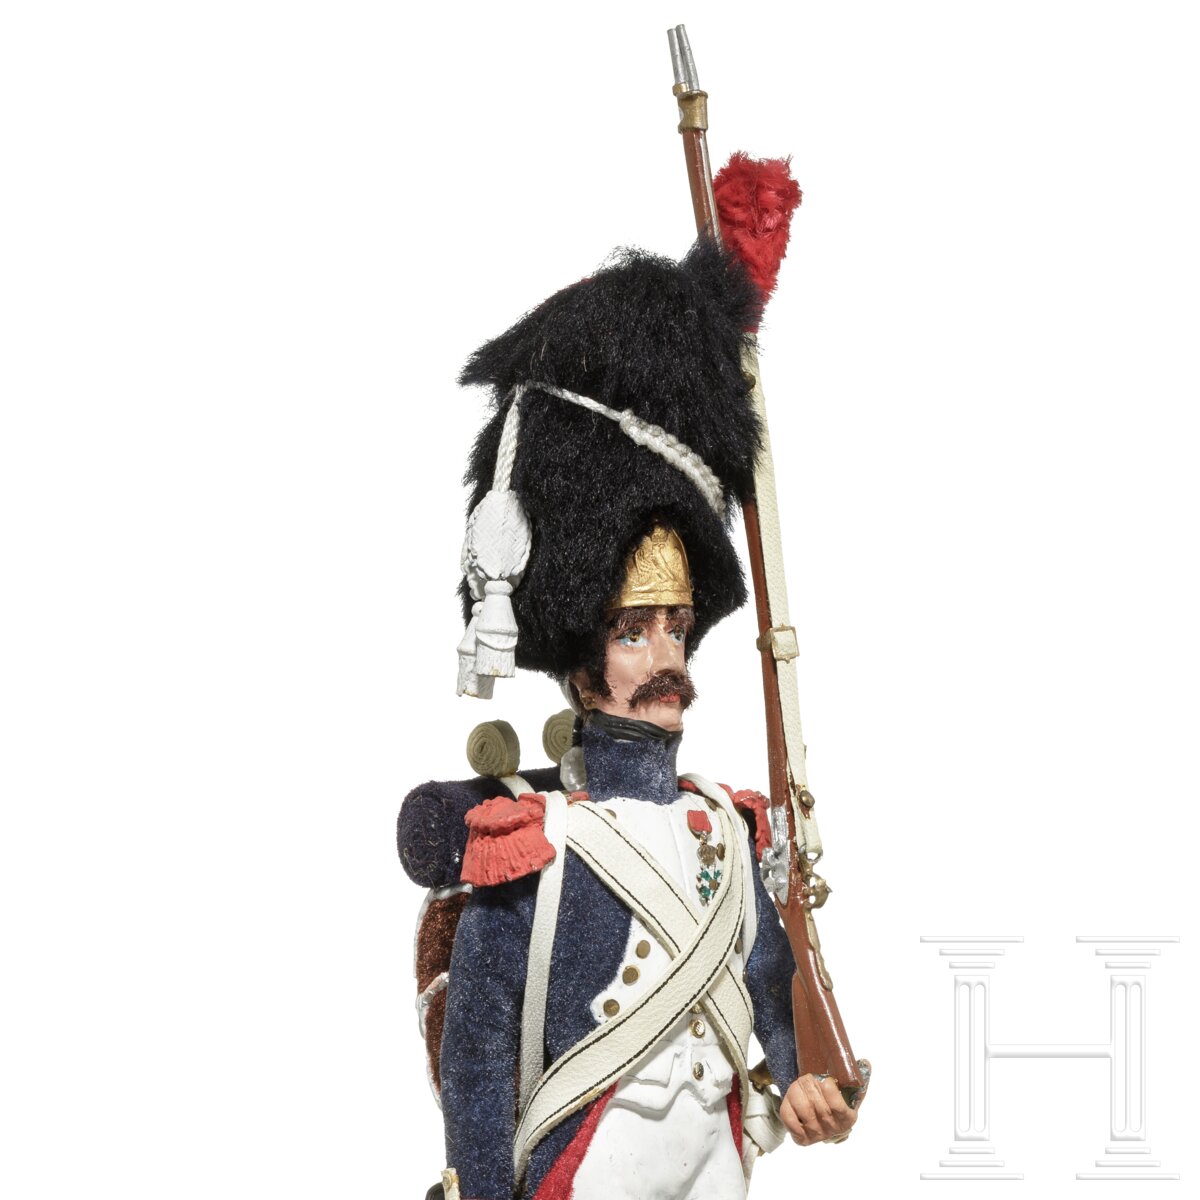 Gardegrenadier ab 1804 - Uniformfigur von Marcel Riffet, 20. Jhdt. - Image 6 of 6